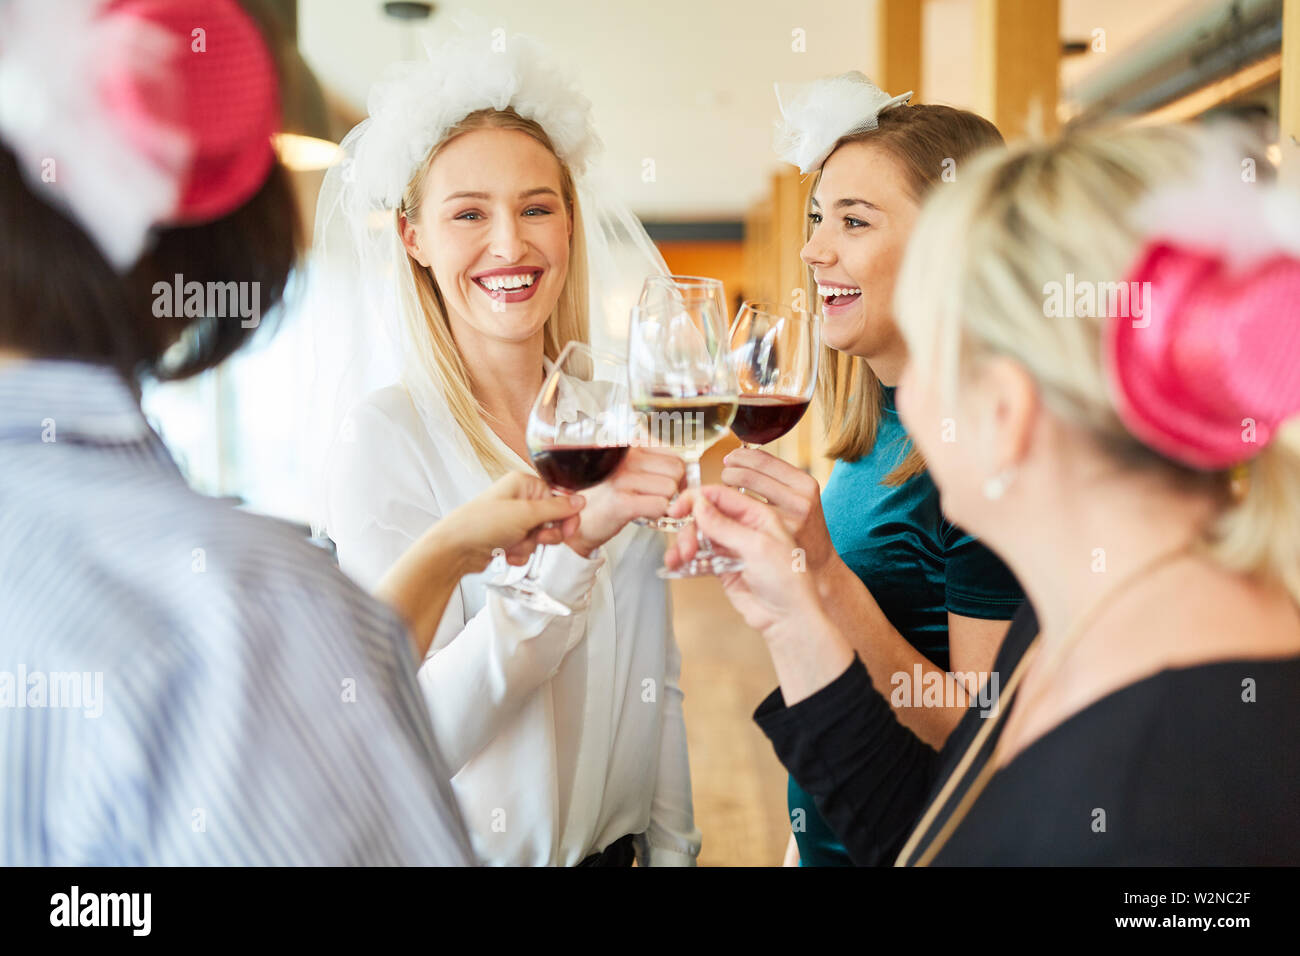 Femme avec Bridal Veil tandis que le grillage avec un verre de vin rouge à l'occasion d'une fête Banque D'Images